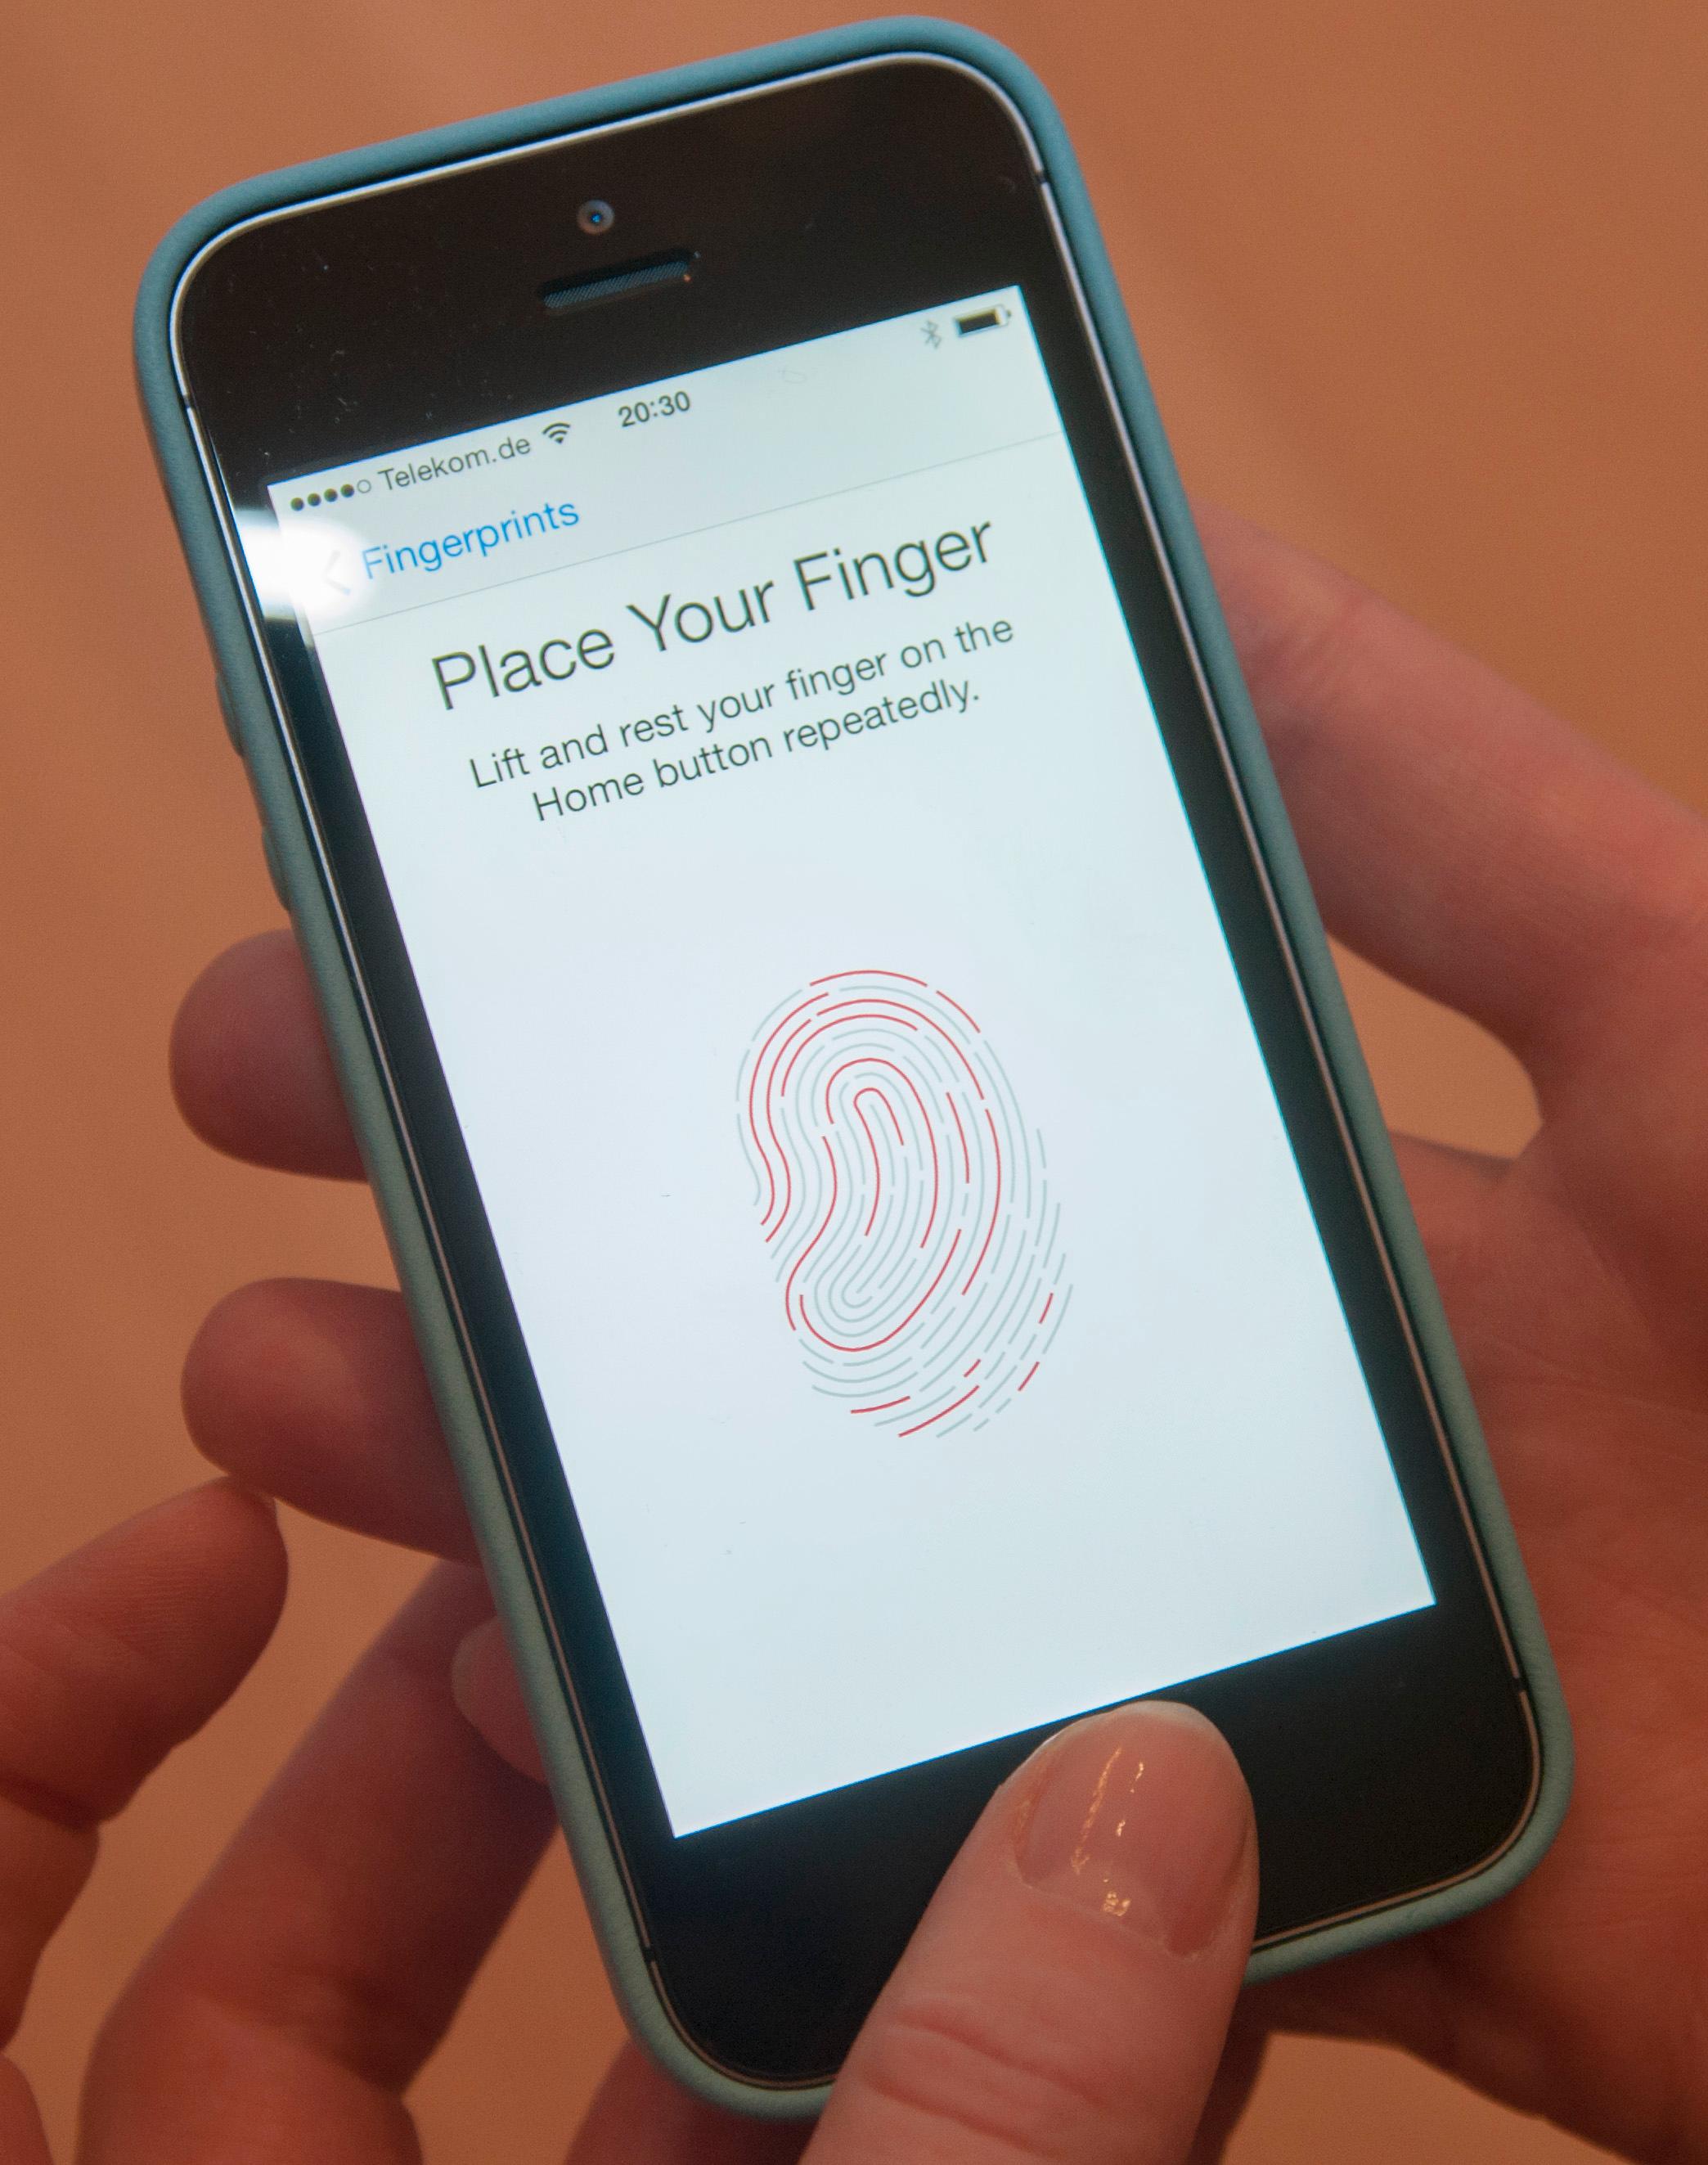 Apples fingeravtrykksteknologi kan bli brukt til å godkjenne betalingstransaksjoner.Foto: Finn Jarle Kvalheim, Amobil.no